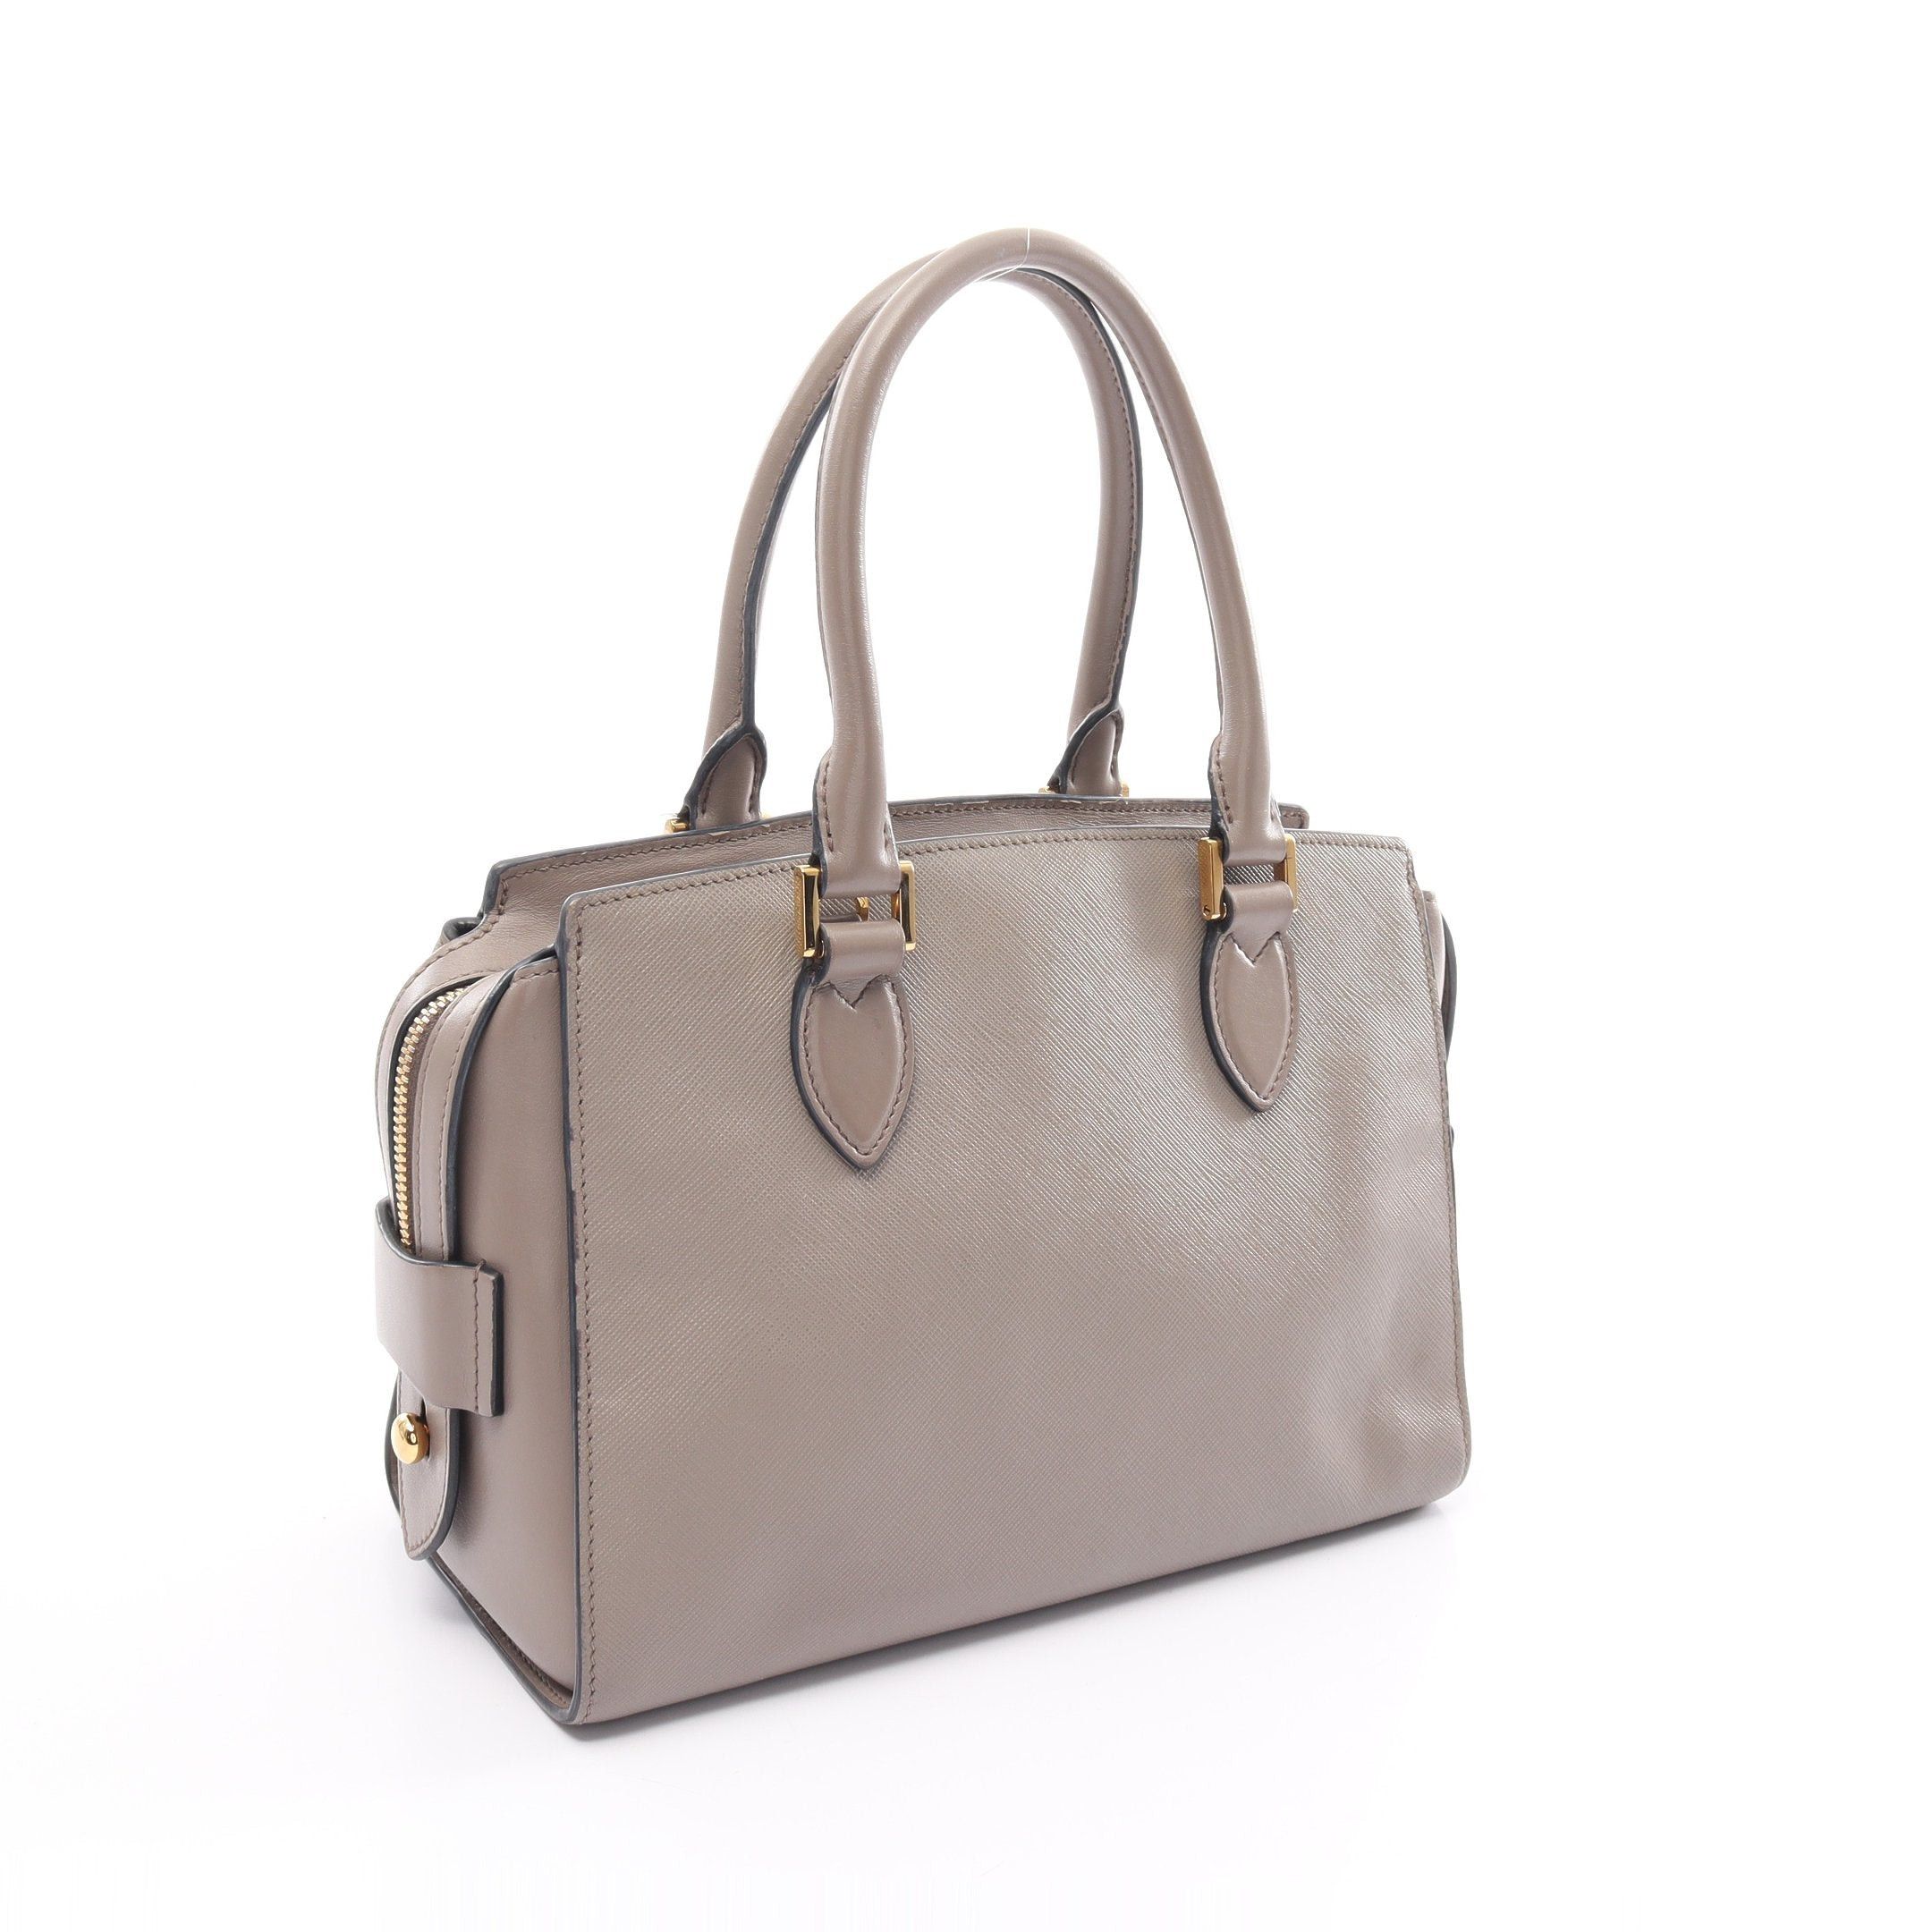 Prada SAFFIANO + SOFT C Handbag Saffiano Leather Gray Beige 2WAY | Grailed